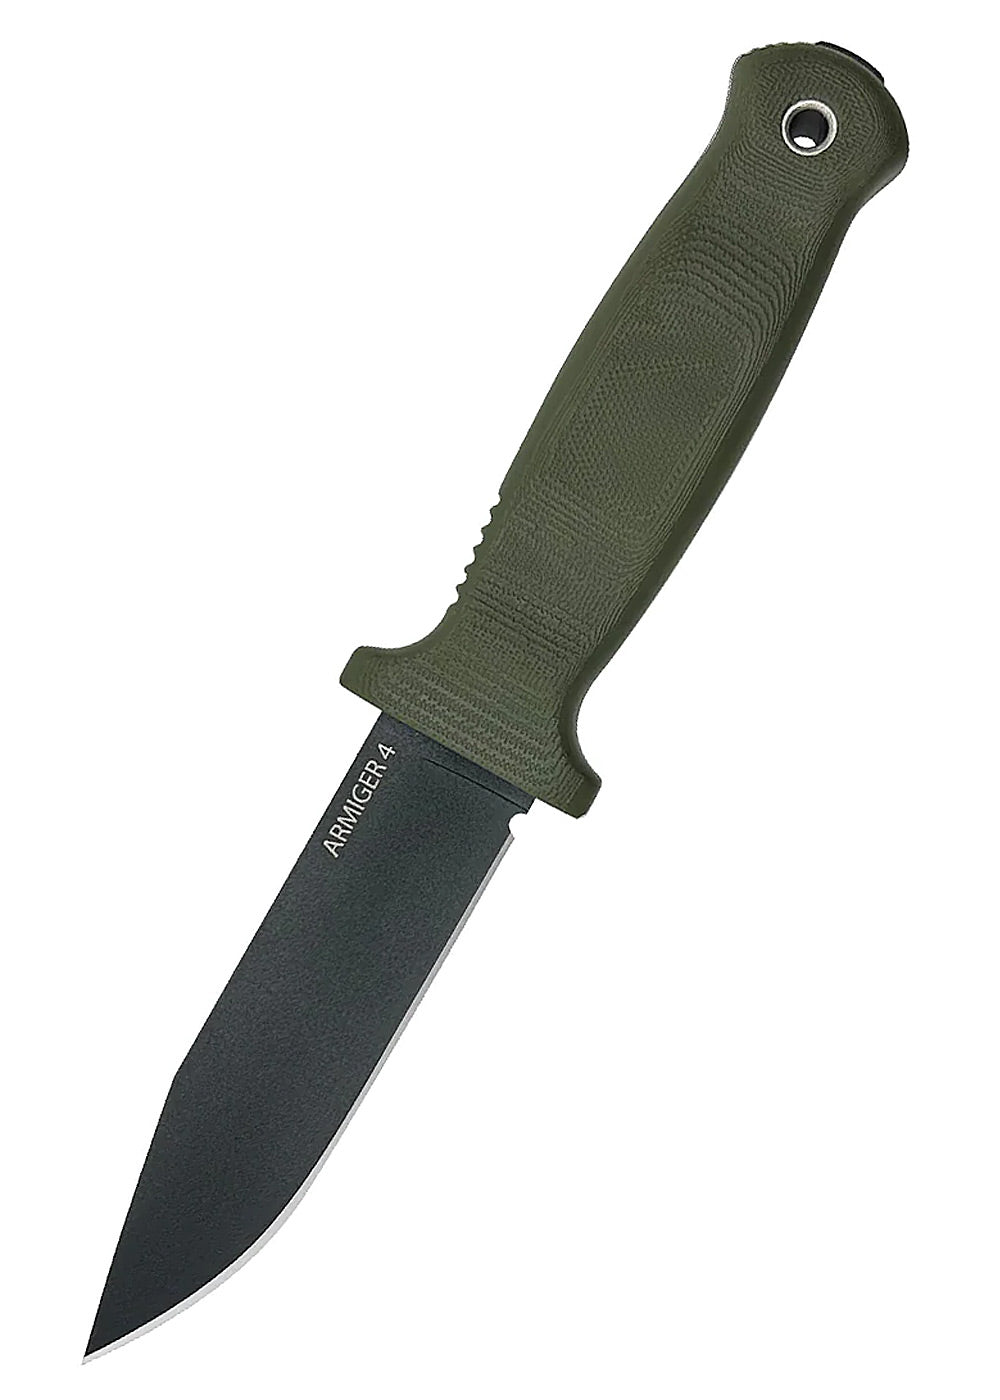 Couteau à lame fixe Armiger 4 Clip Point - Demko-T.A DEFENSE